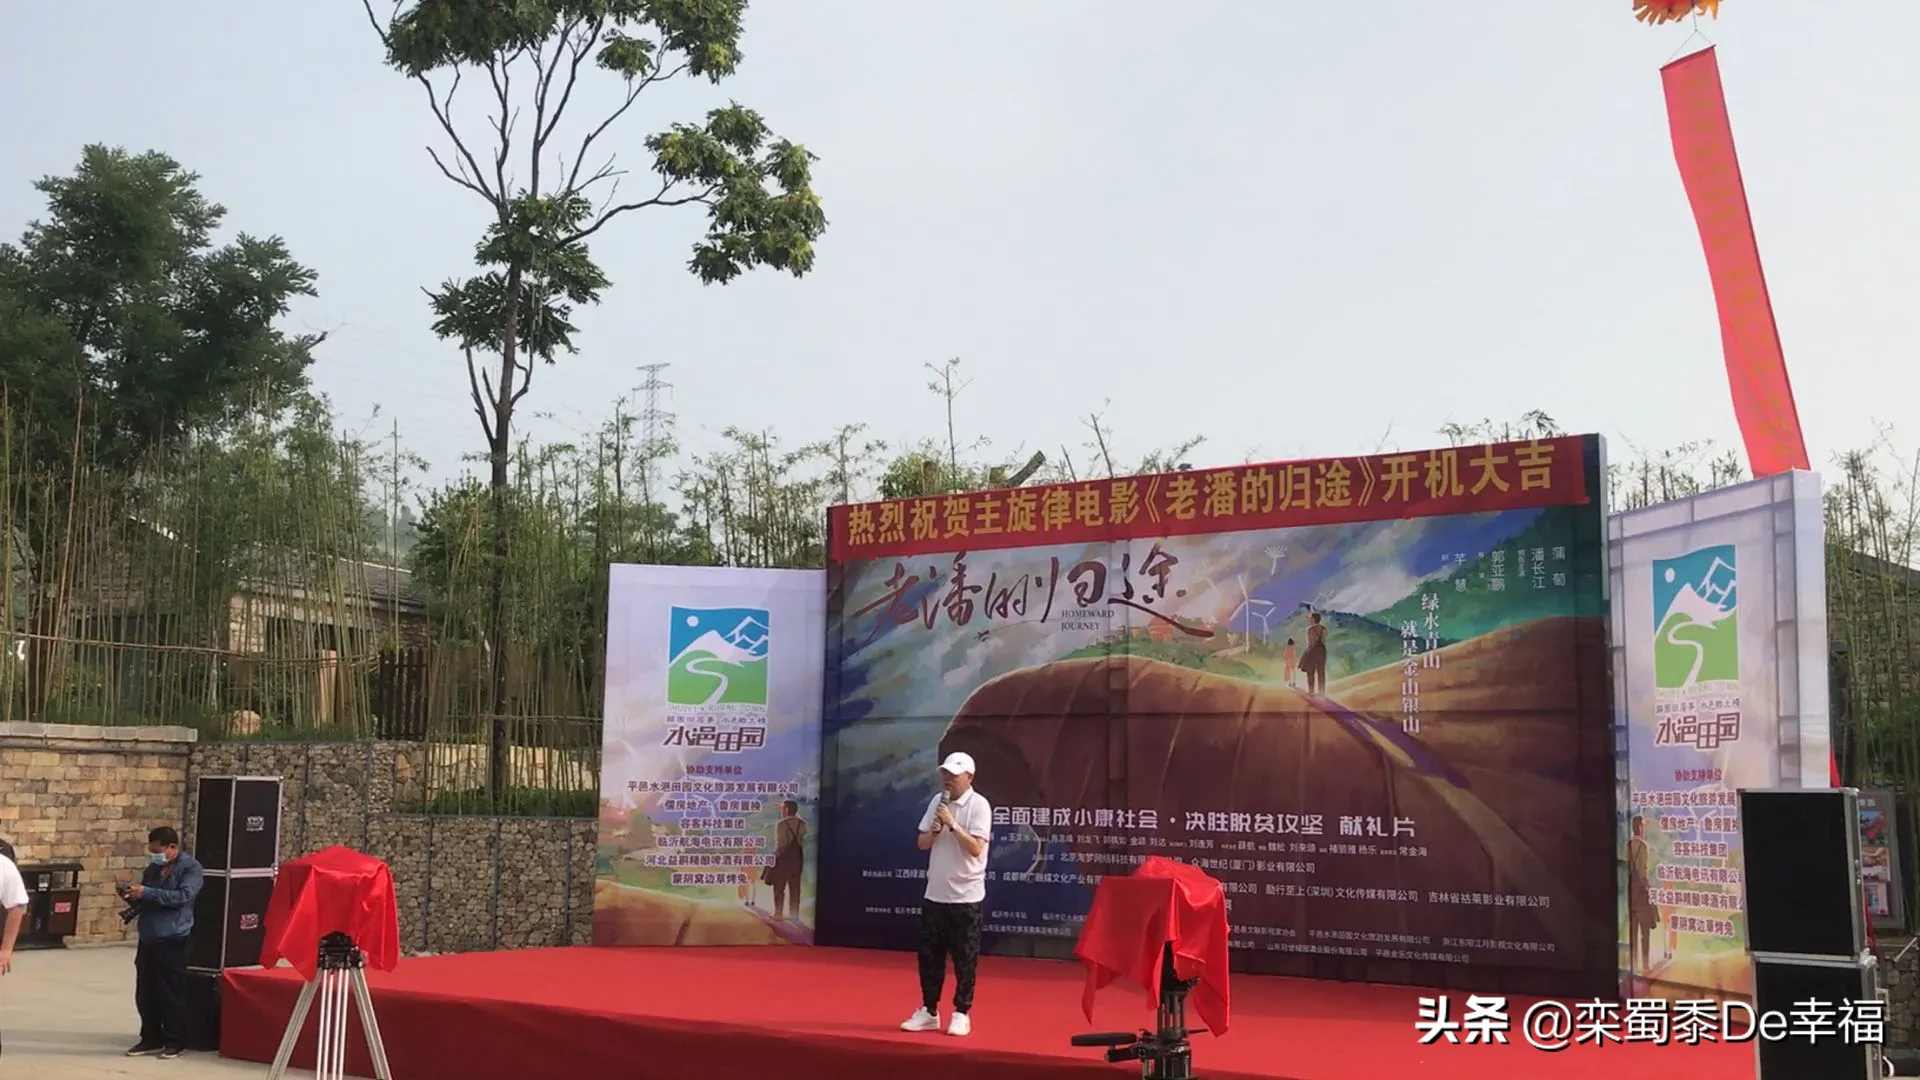 潘长江老师新电影《老潘的归途》，今日在临沂市平邑县正式开机